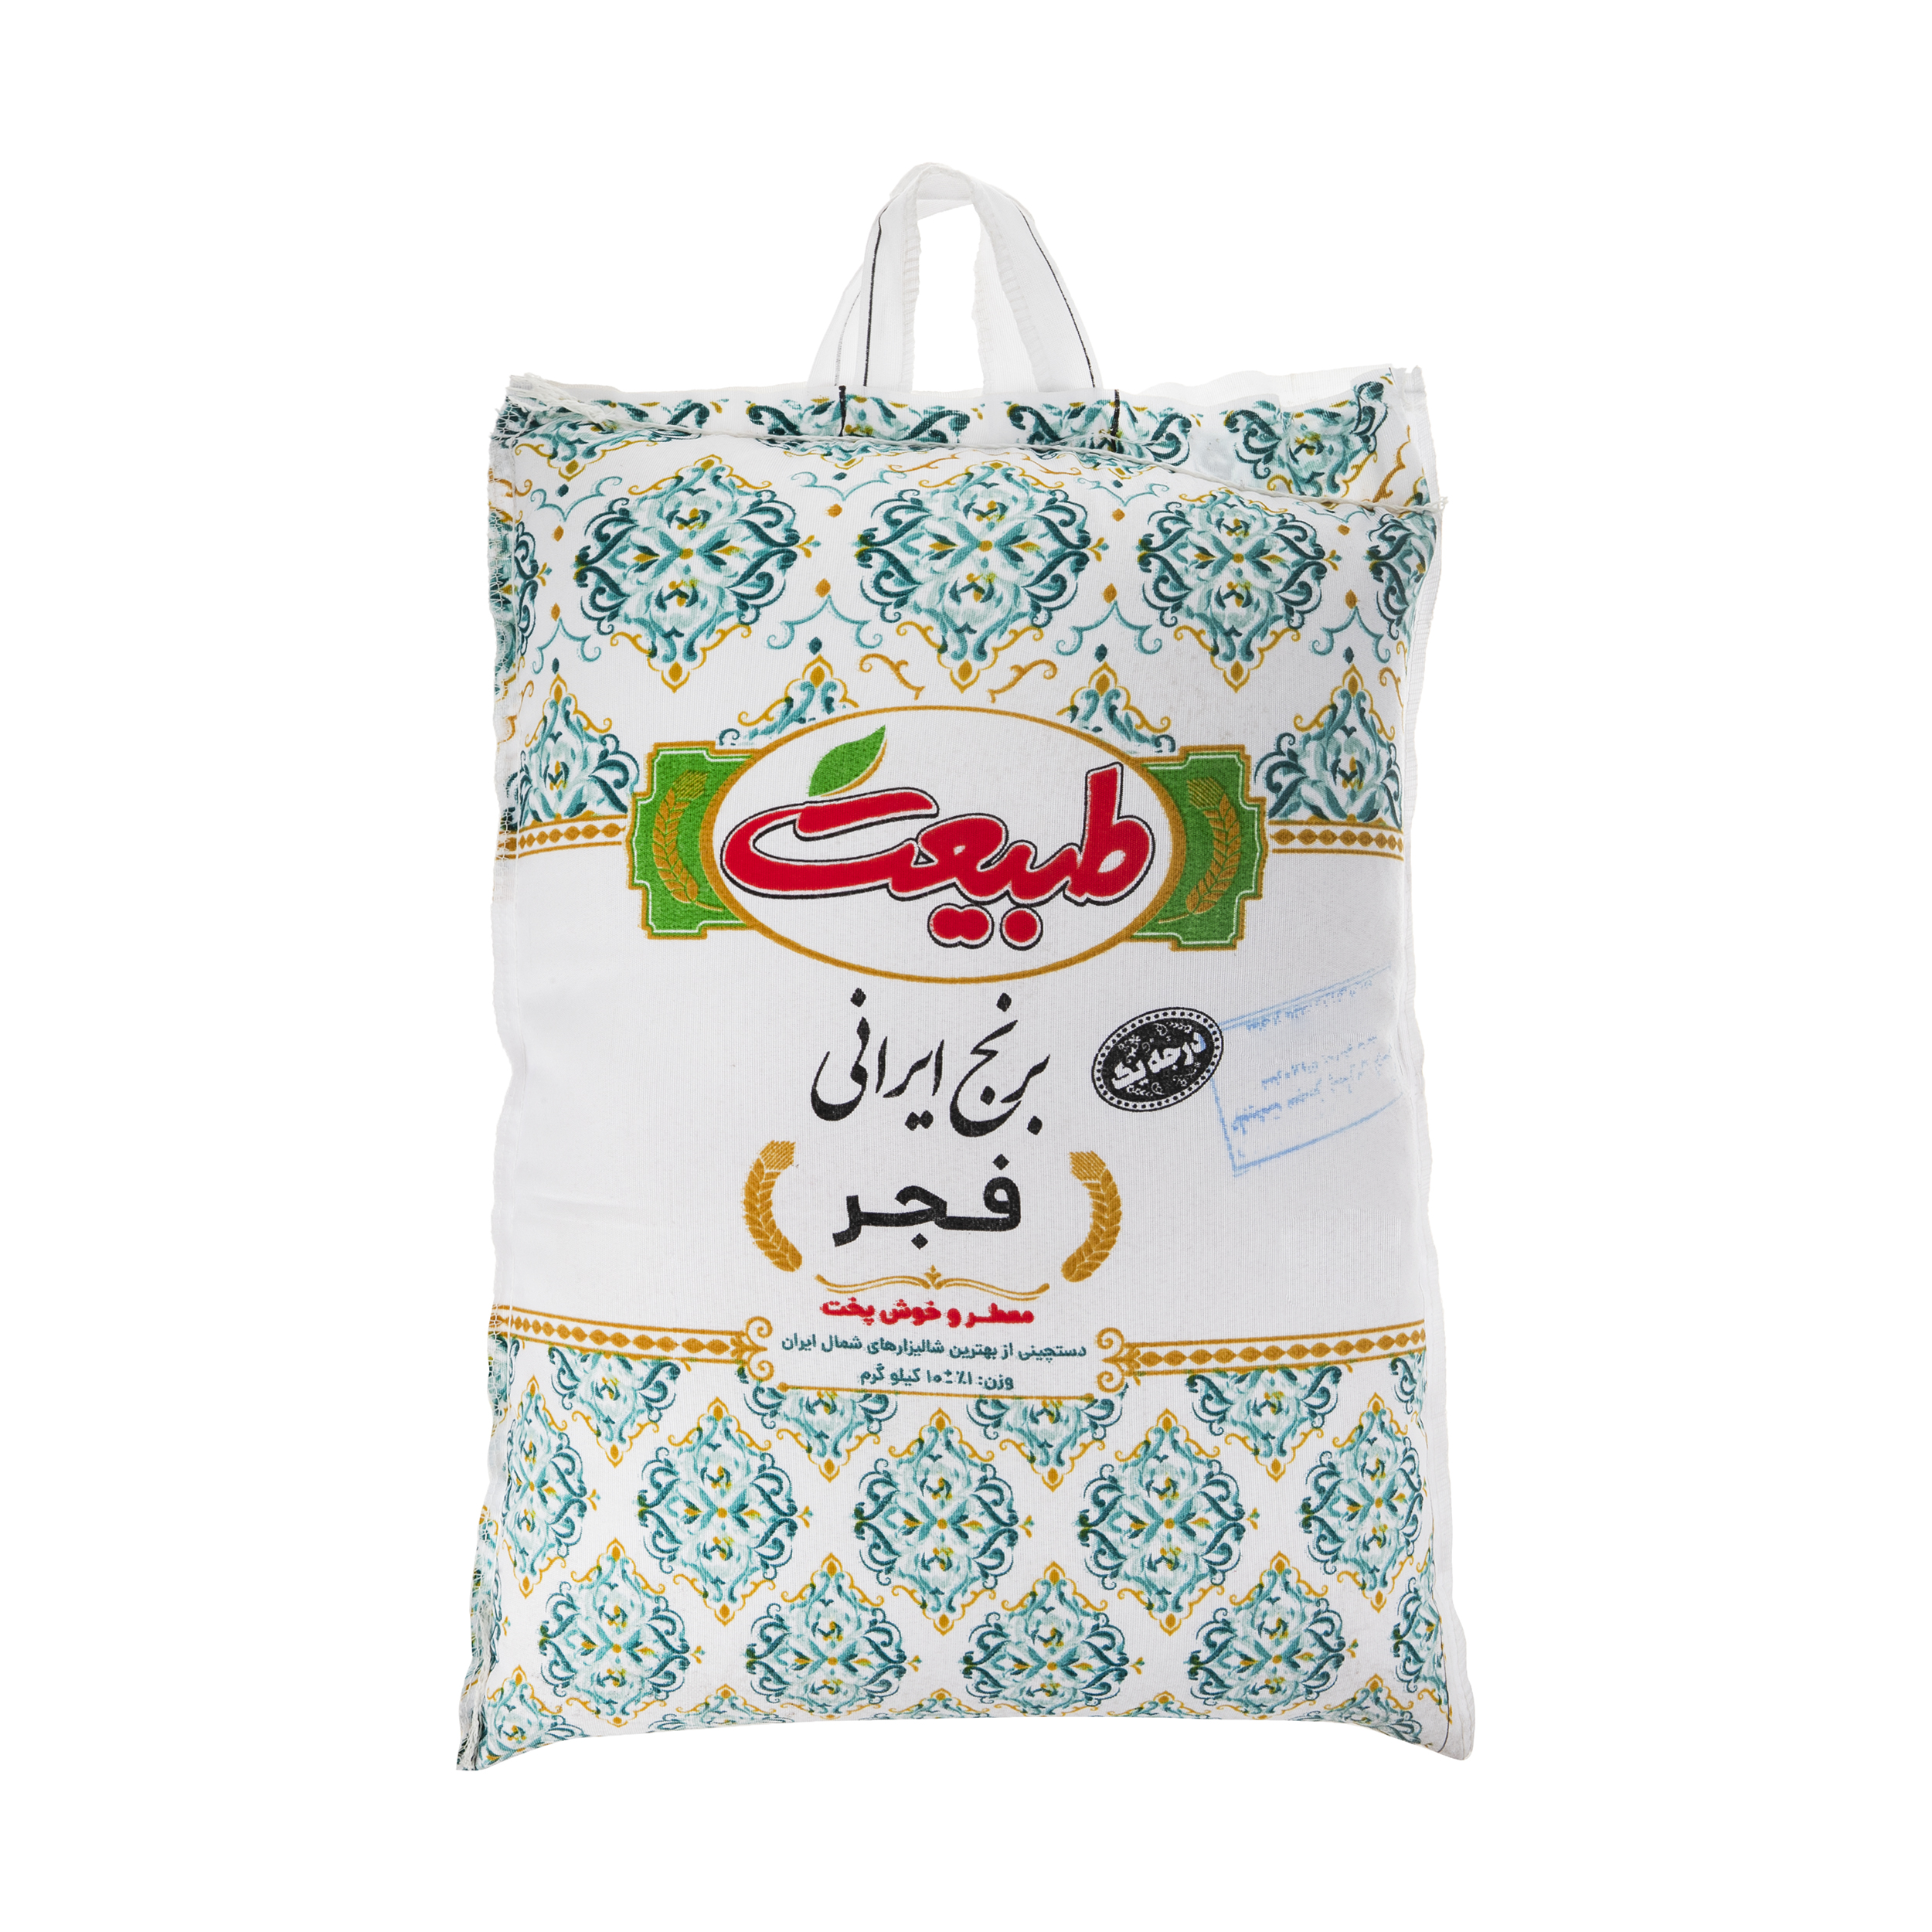 نکته خرید - قیمت روز برنج ایرانی فجر طبیعت - 10 کیلوگرم خرید